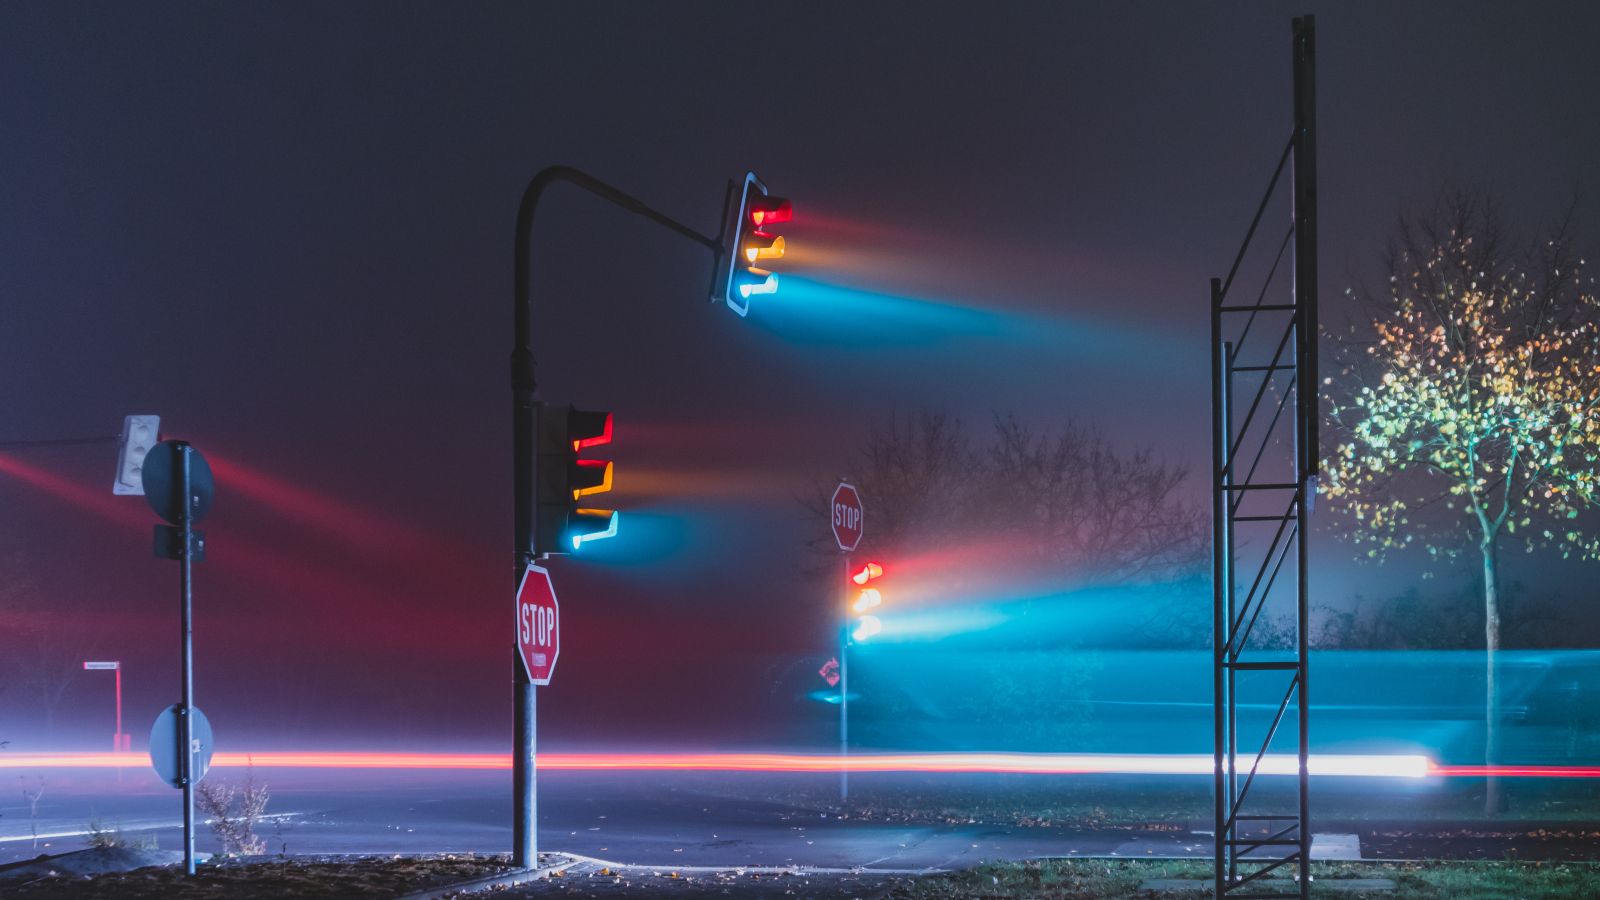 Das Foto zeigt eine leere Straße im Nebel, auf der drei Ampeln stehen, deren drei Lichter grün, gelb und rot allesamt leuchten. 